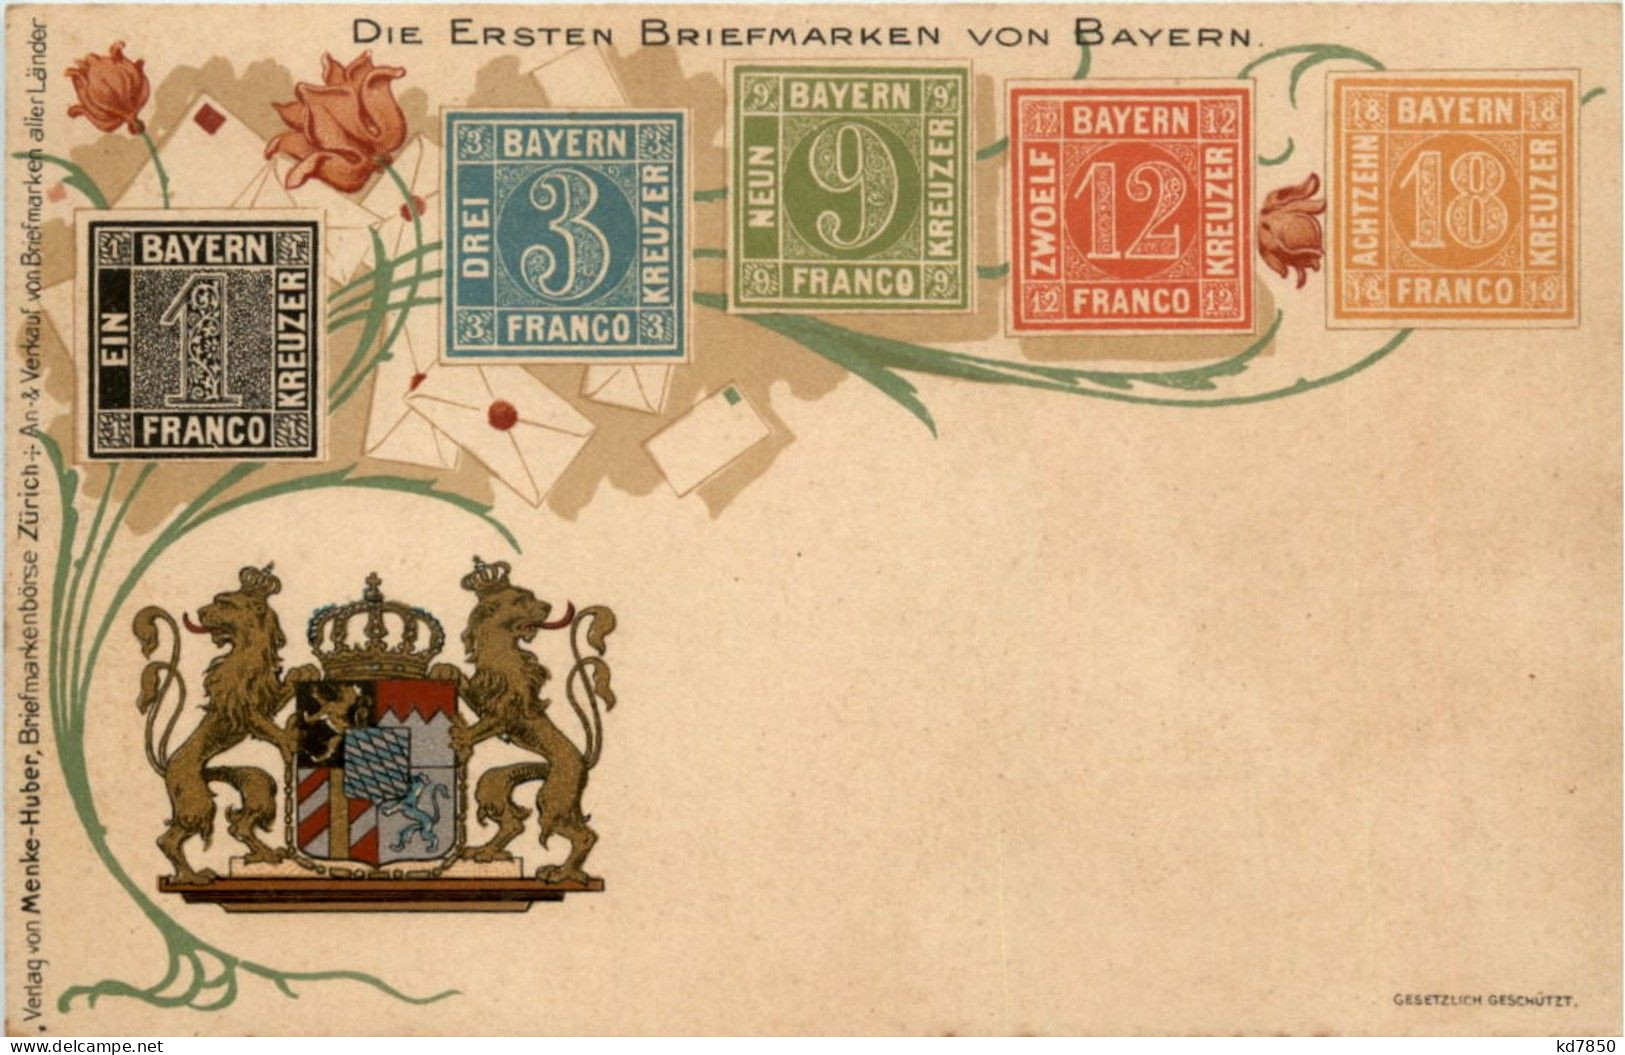 Die Ersten Briefmarken Von Bayern - Litho - Stamps (pictures)